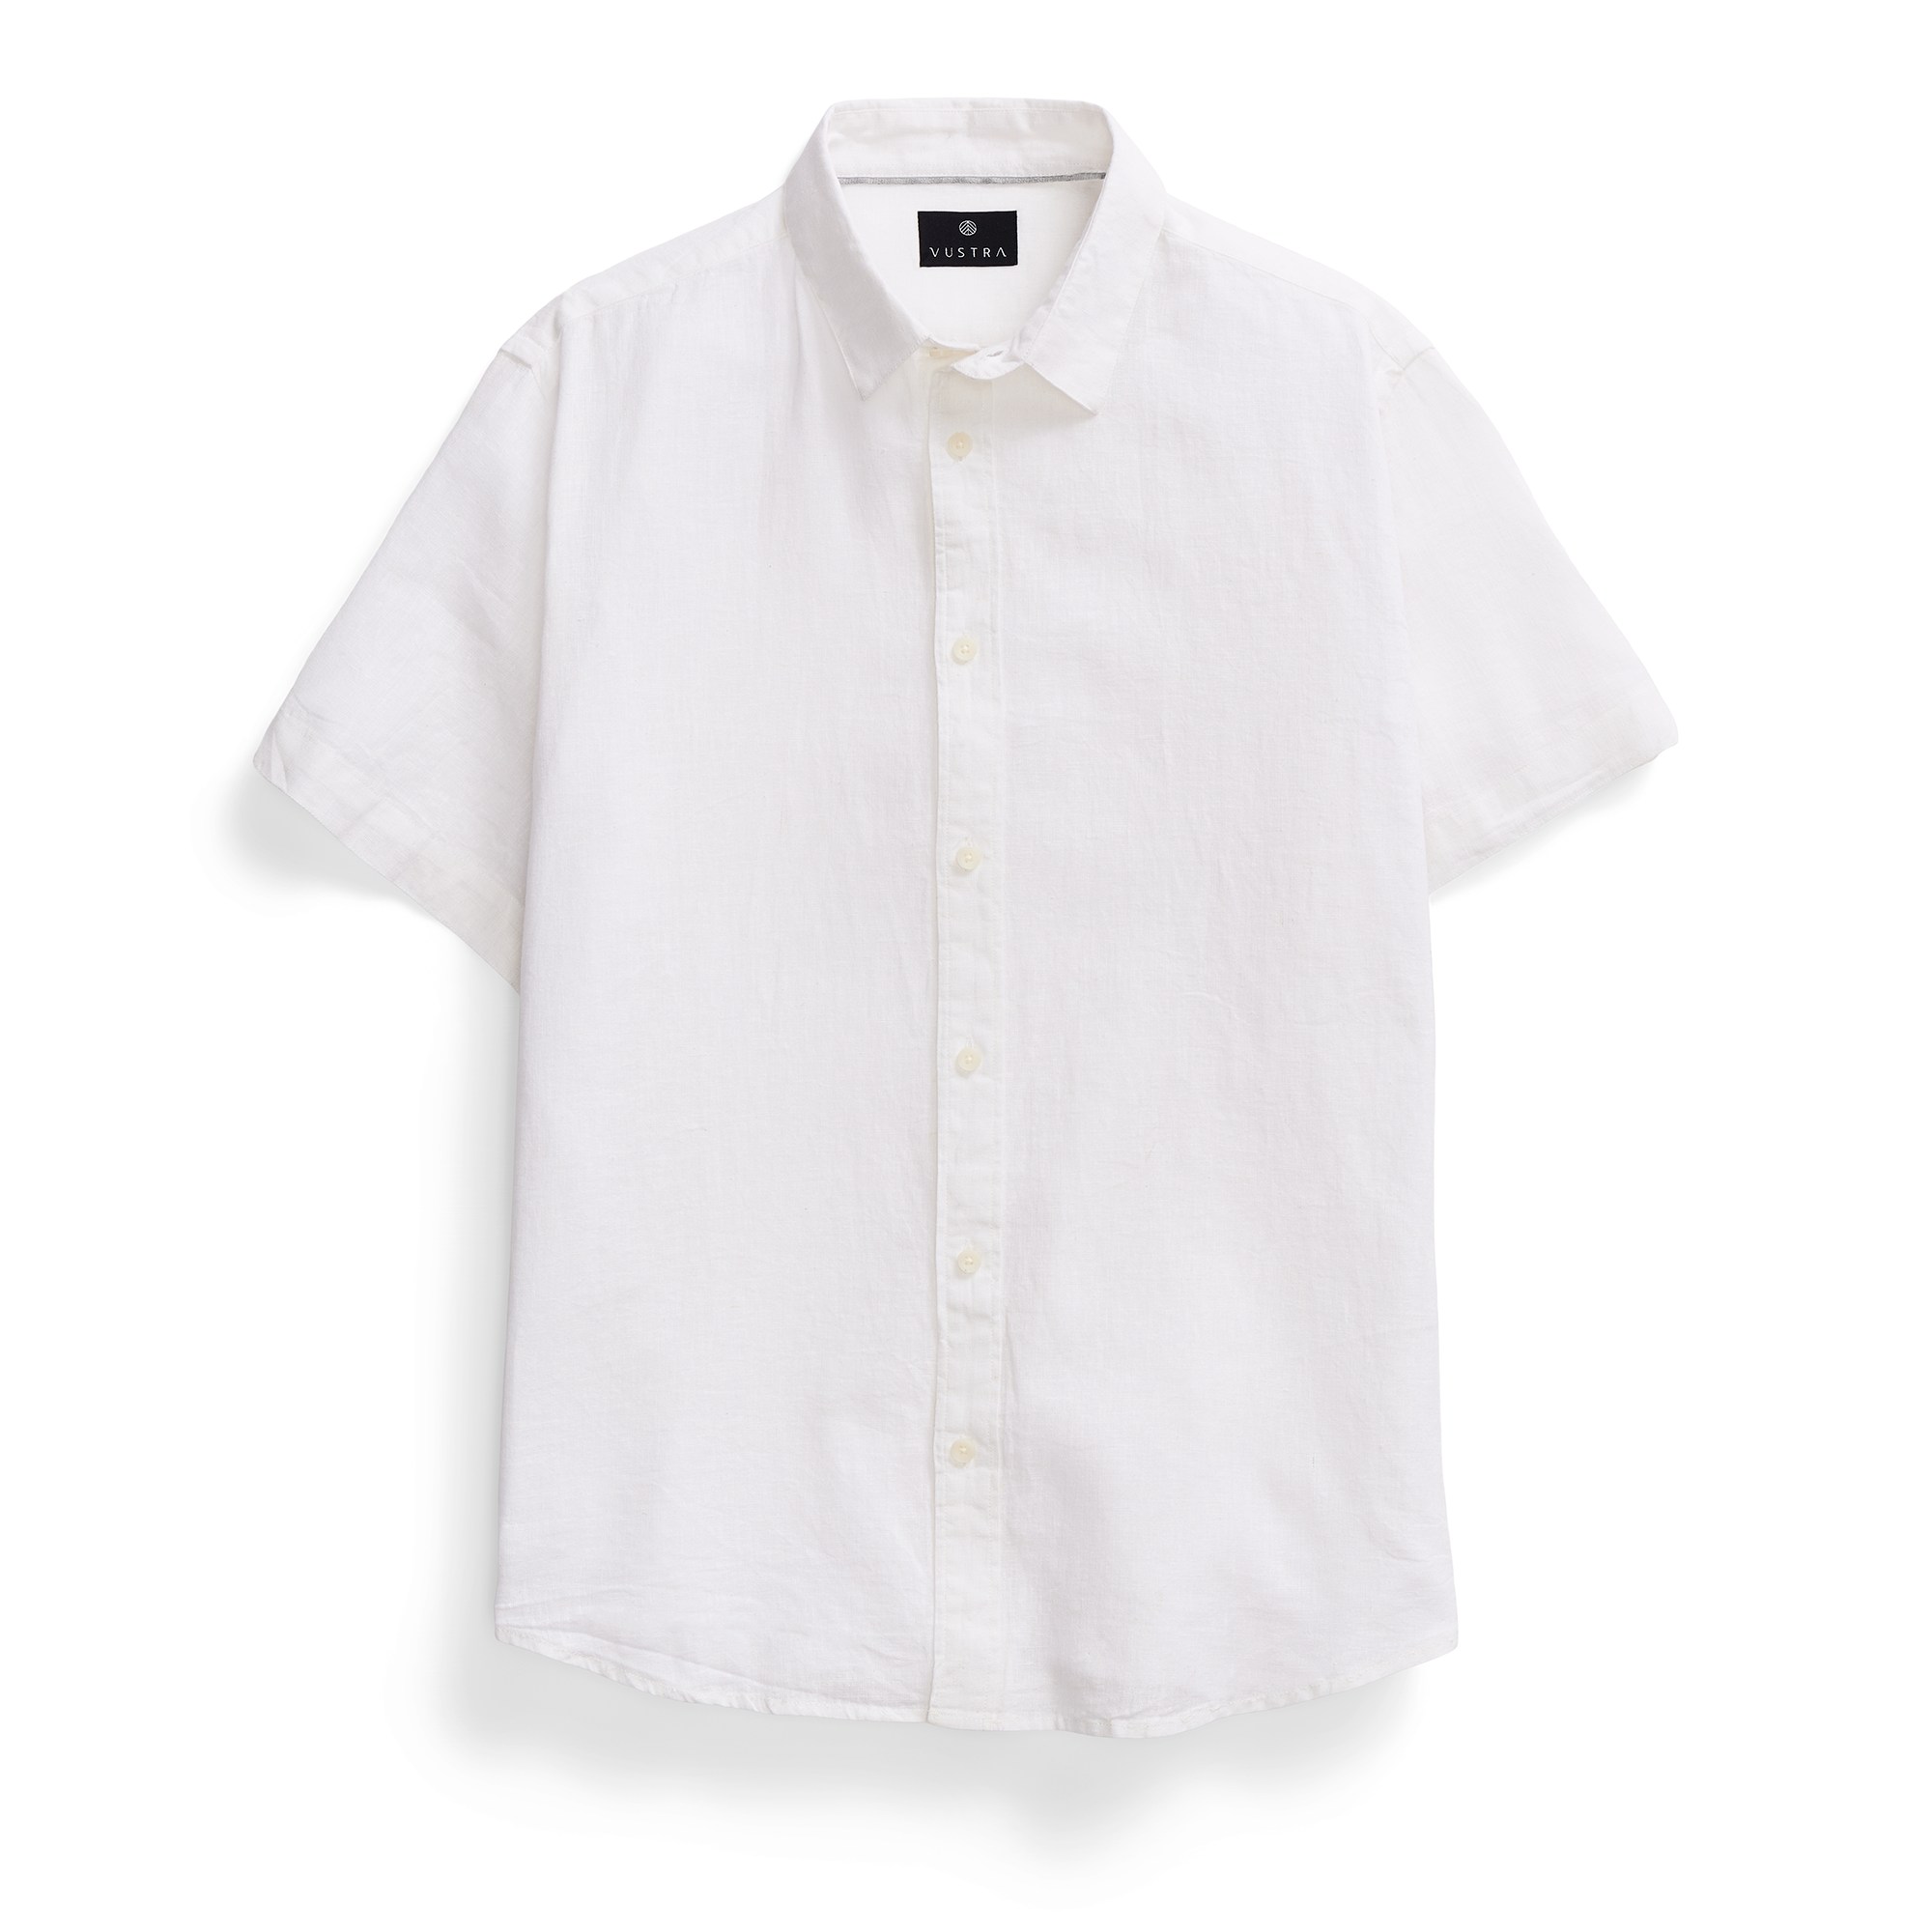 Vustra Men's Pearl White Short-sleeve